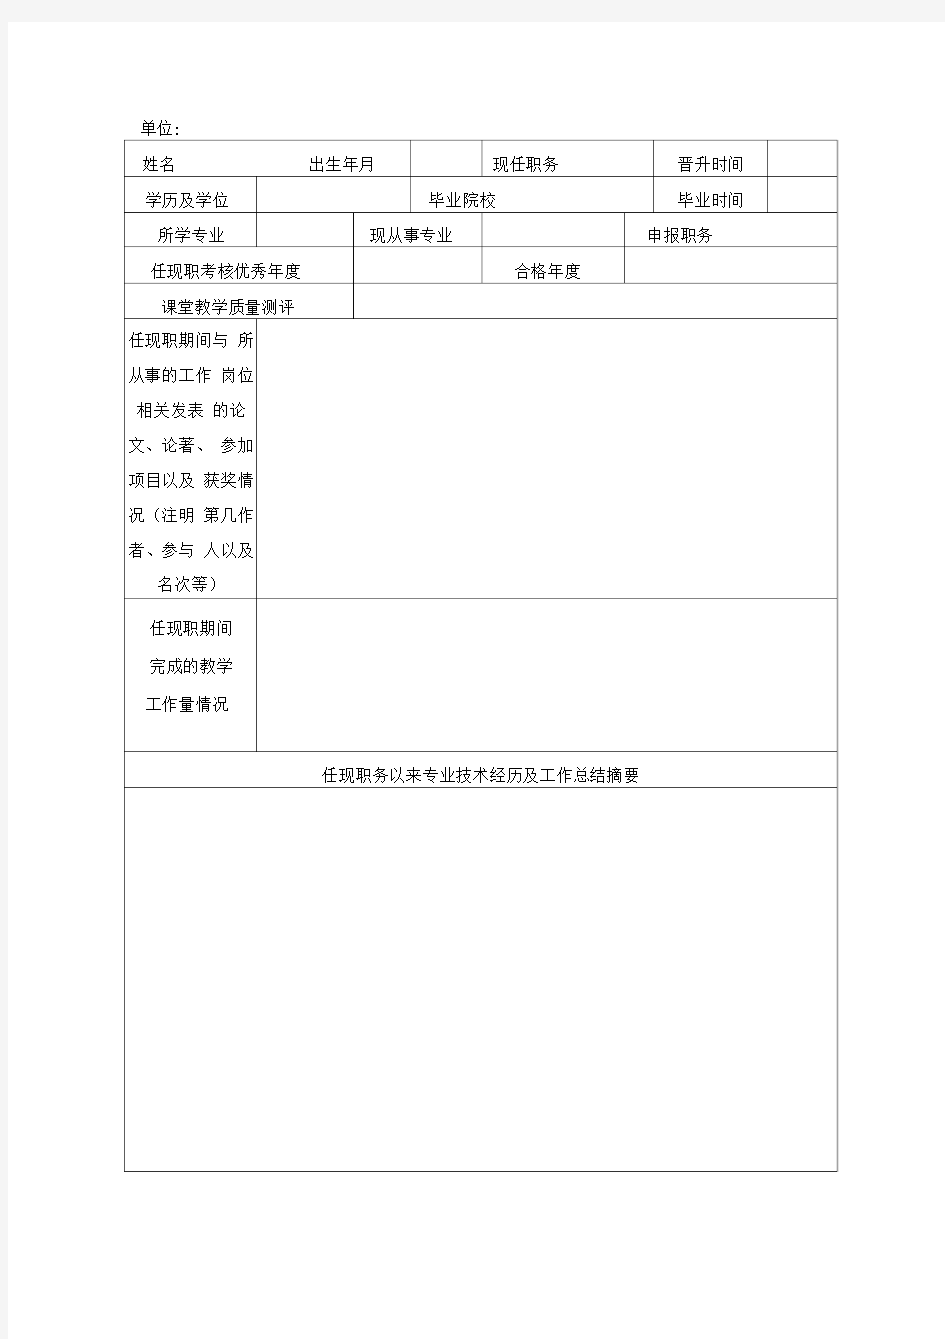 海南大学中初级专业技术资格评审推荐表